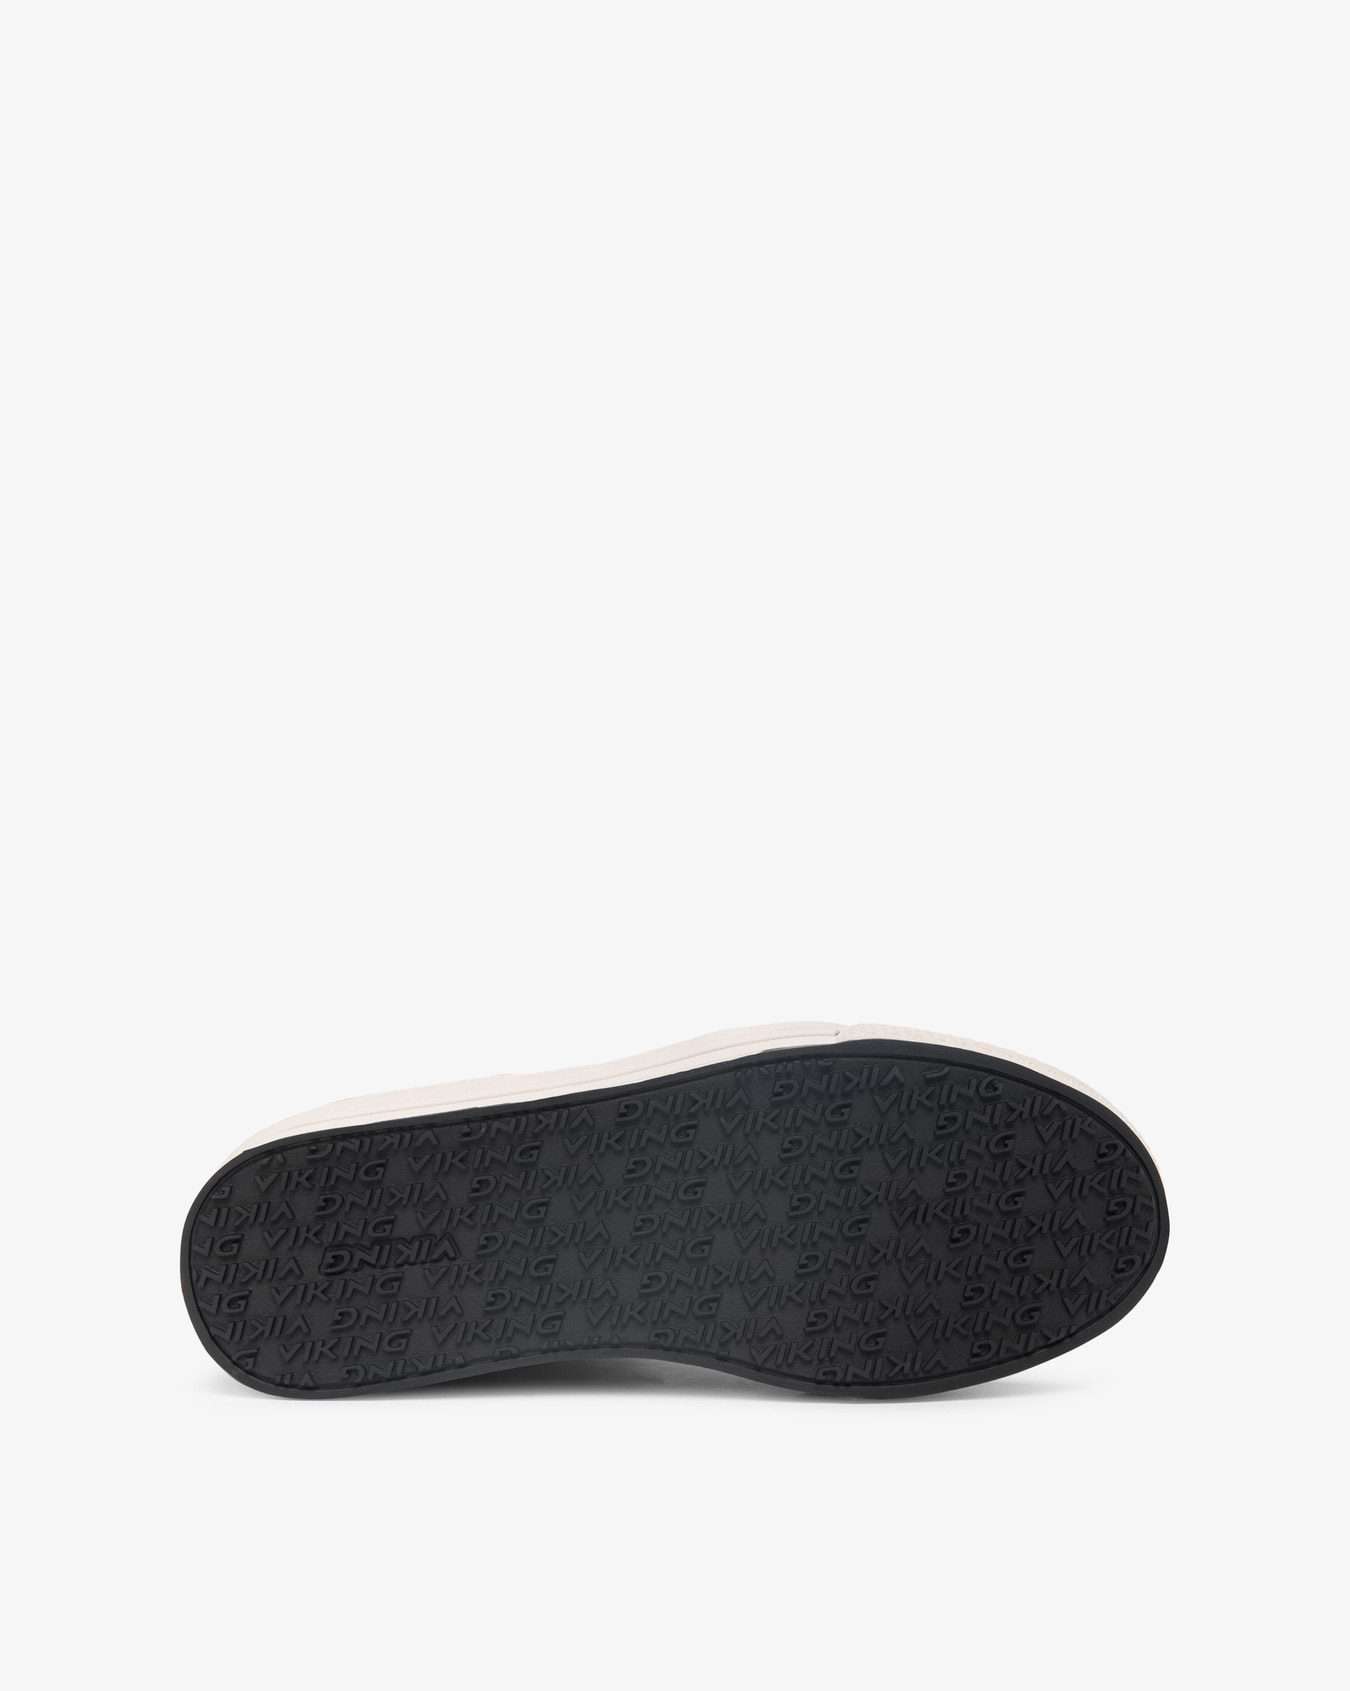 Viking Zing Jr Sneaker Black Waterproof Insulated Velcro